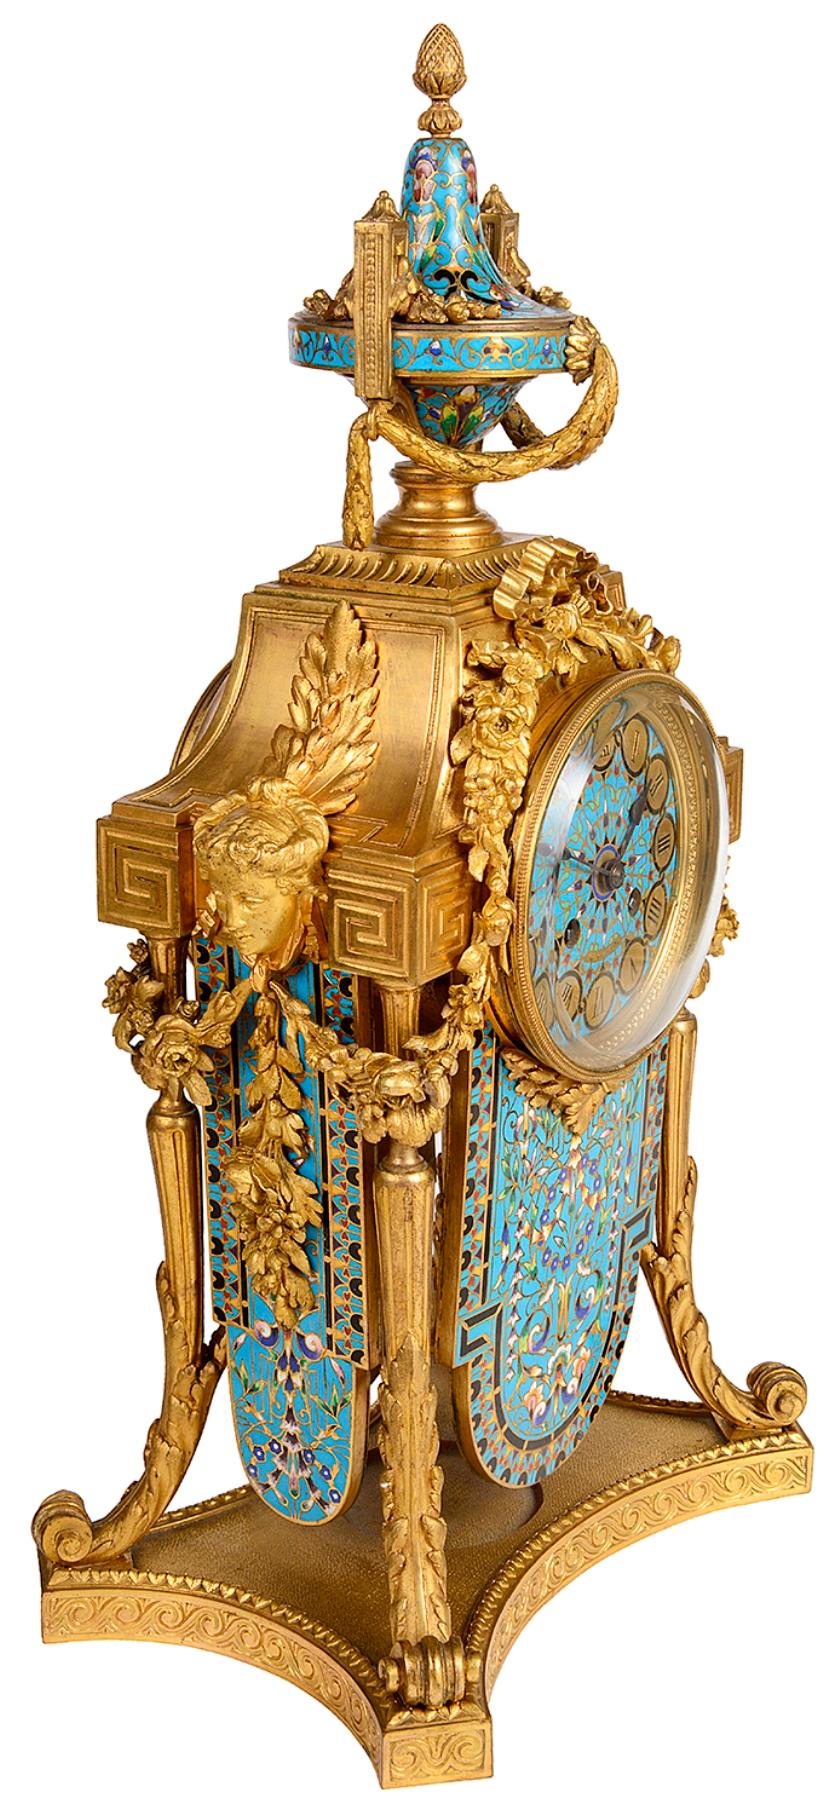 Eine wunderbare Qualität des späten 19. Jahrhunderts Französisch Louis XVI-Stil vergoldet Ormolu und Champlevé Emaille Uhr Garnitur, die Uhr mit einem zwei behandelt türkisfarbenen Emaille Urne mit Schwänen über die Blumen und Band verziert acht